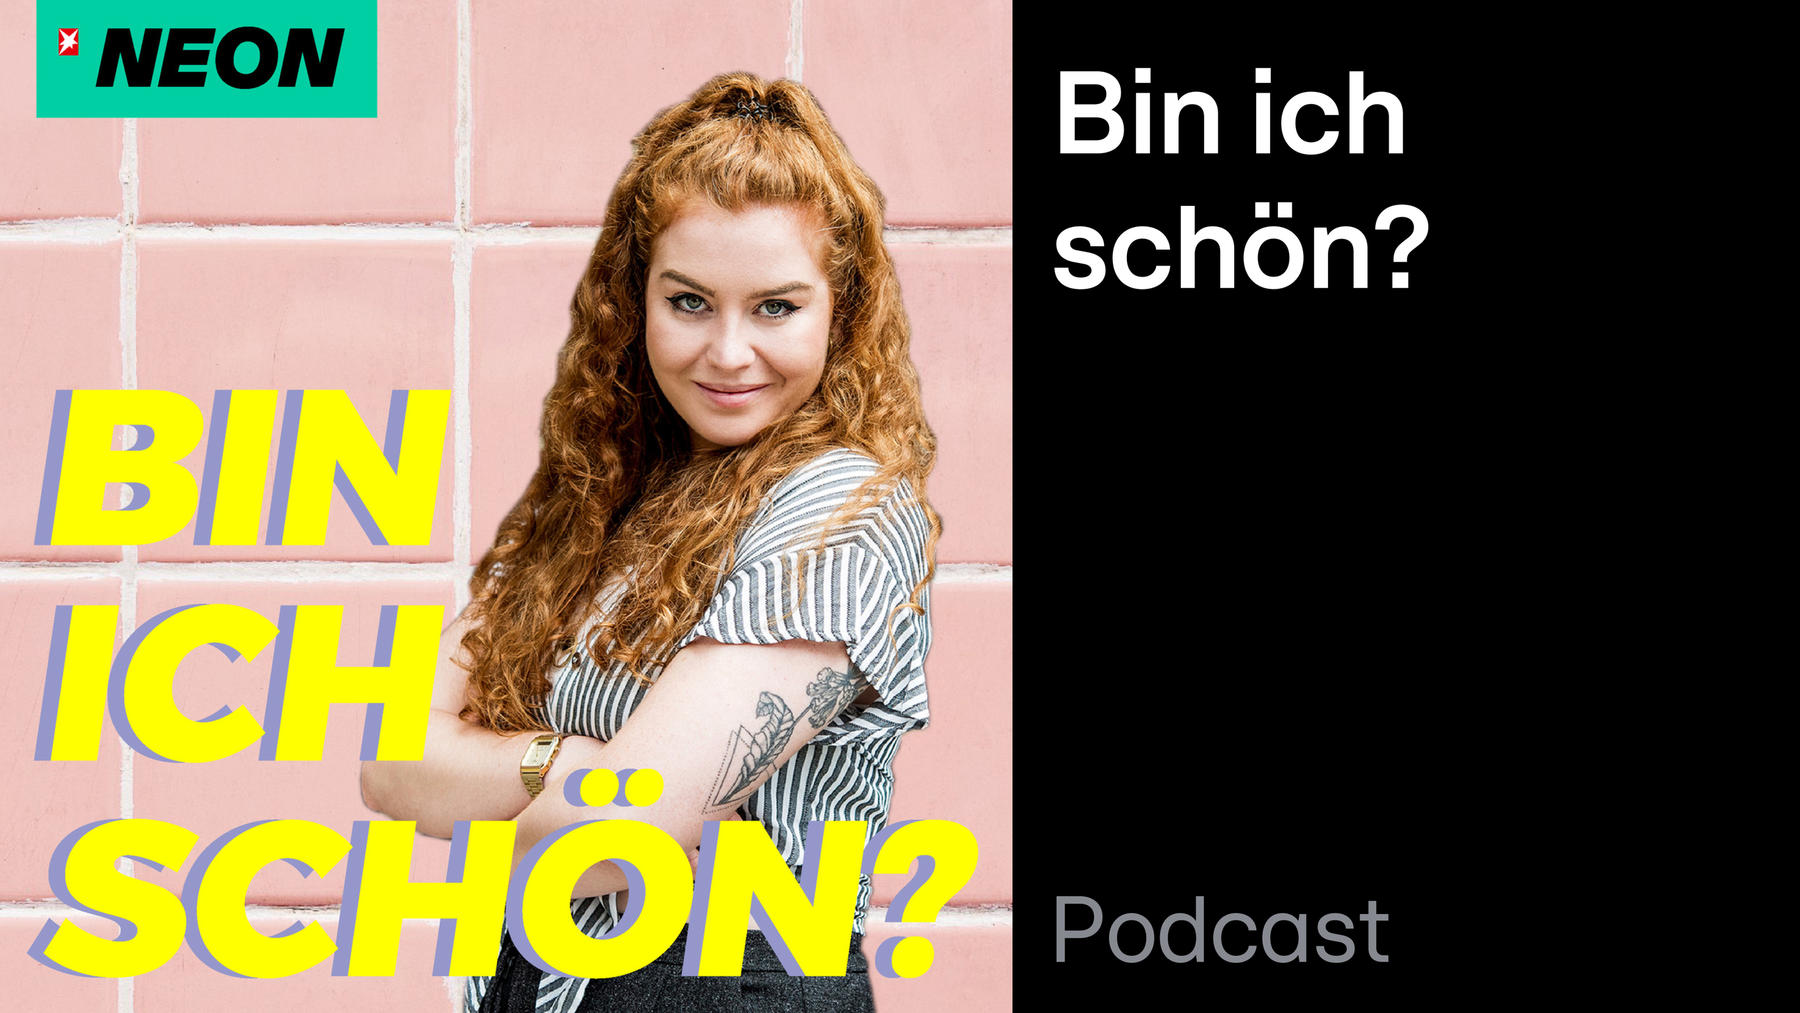 Podcast: Bin ich schön?